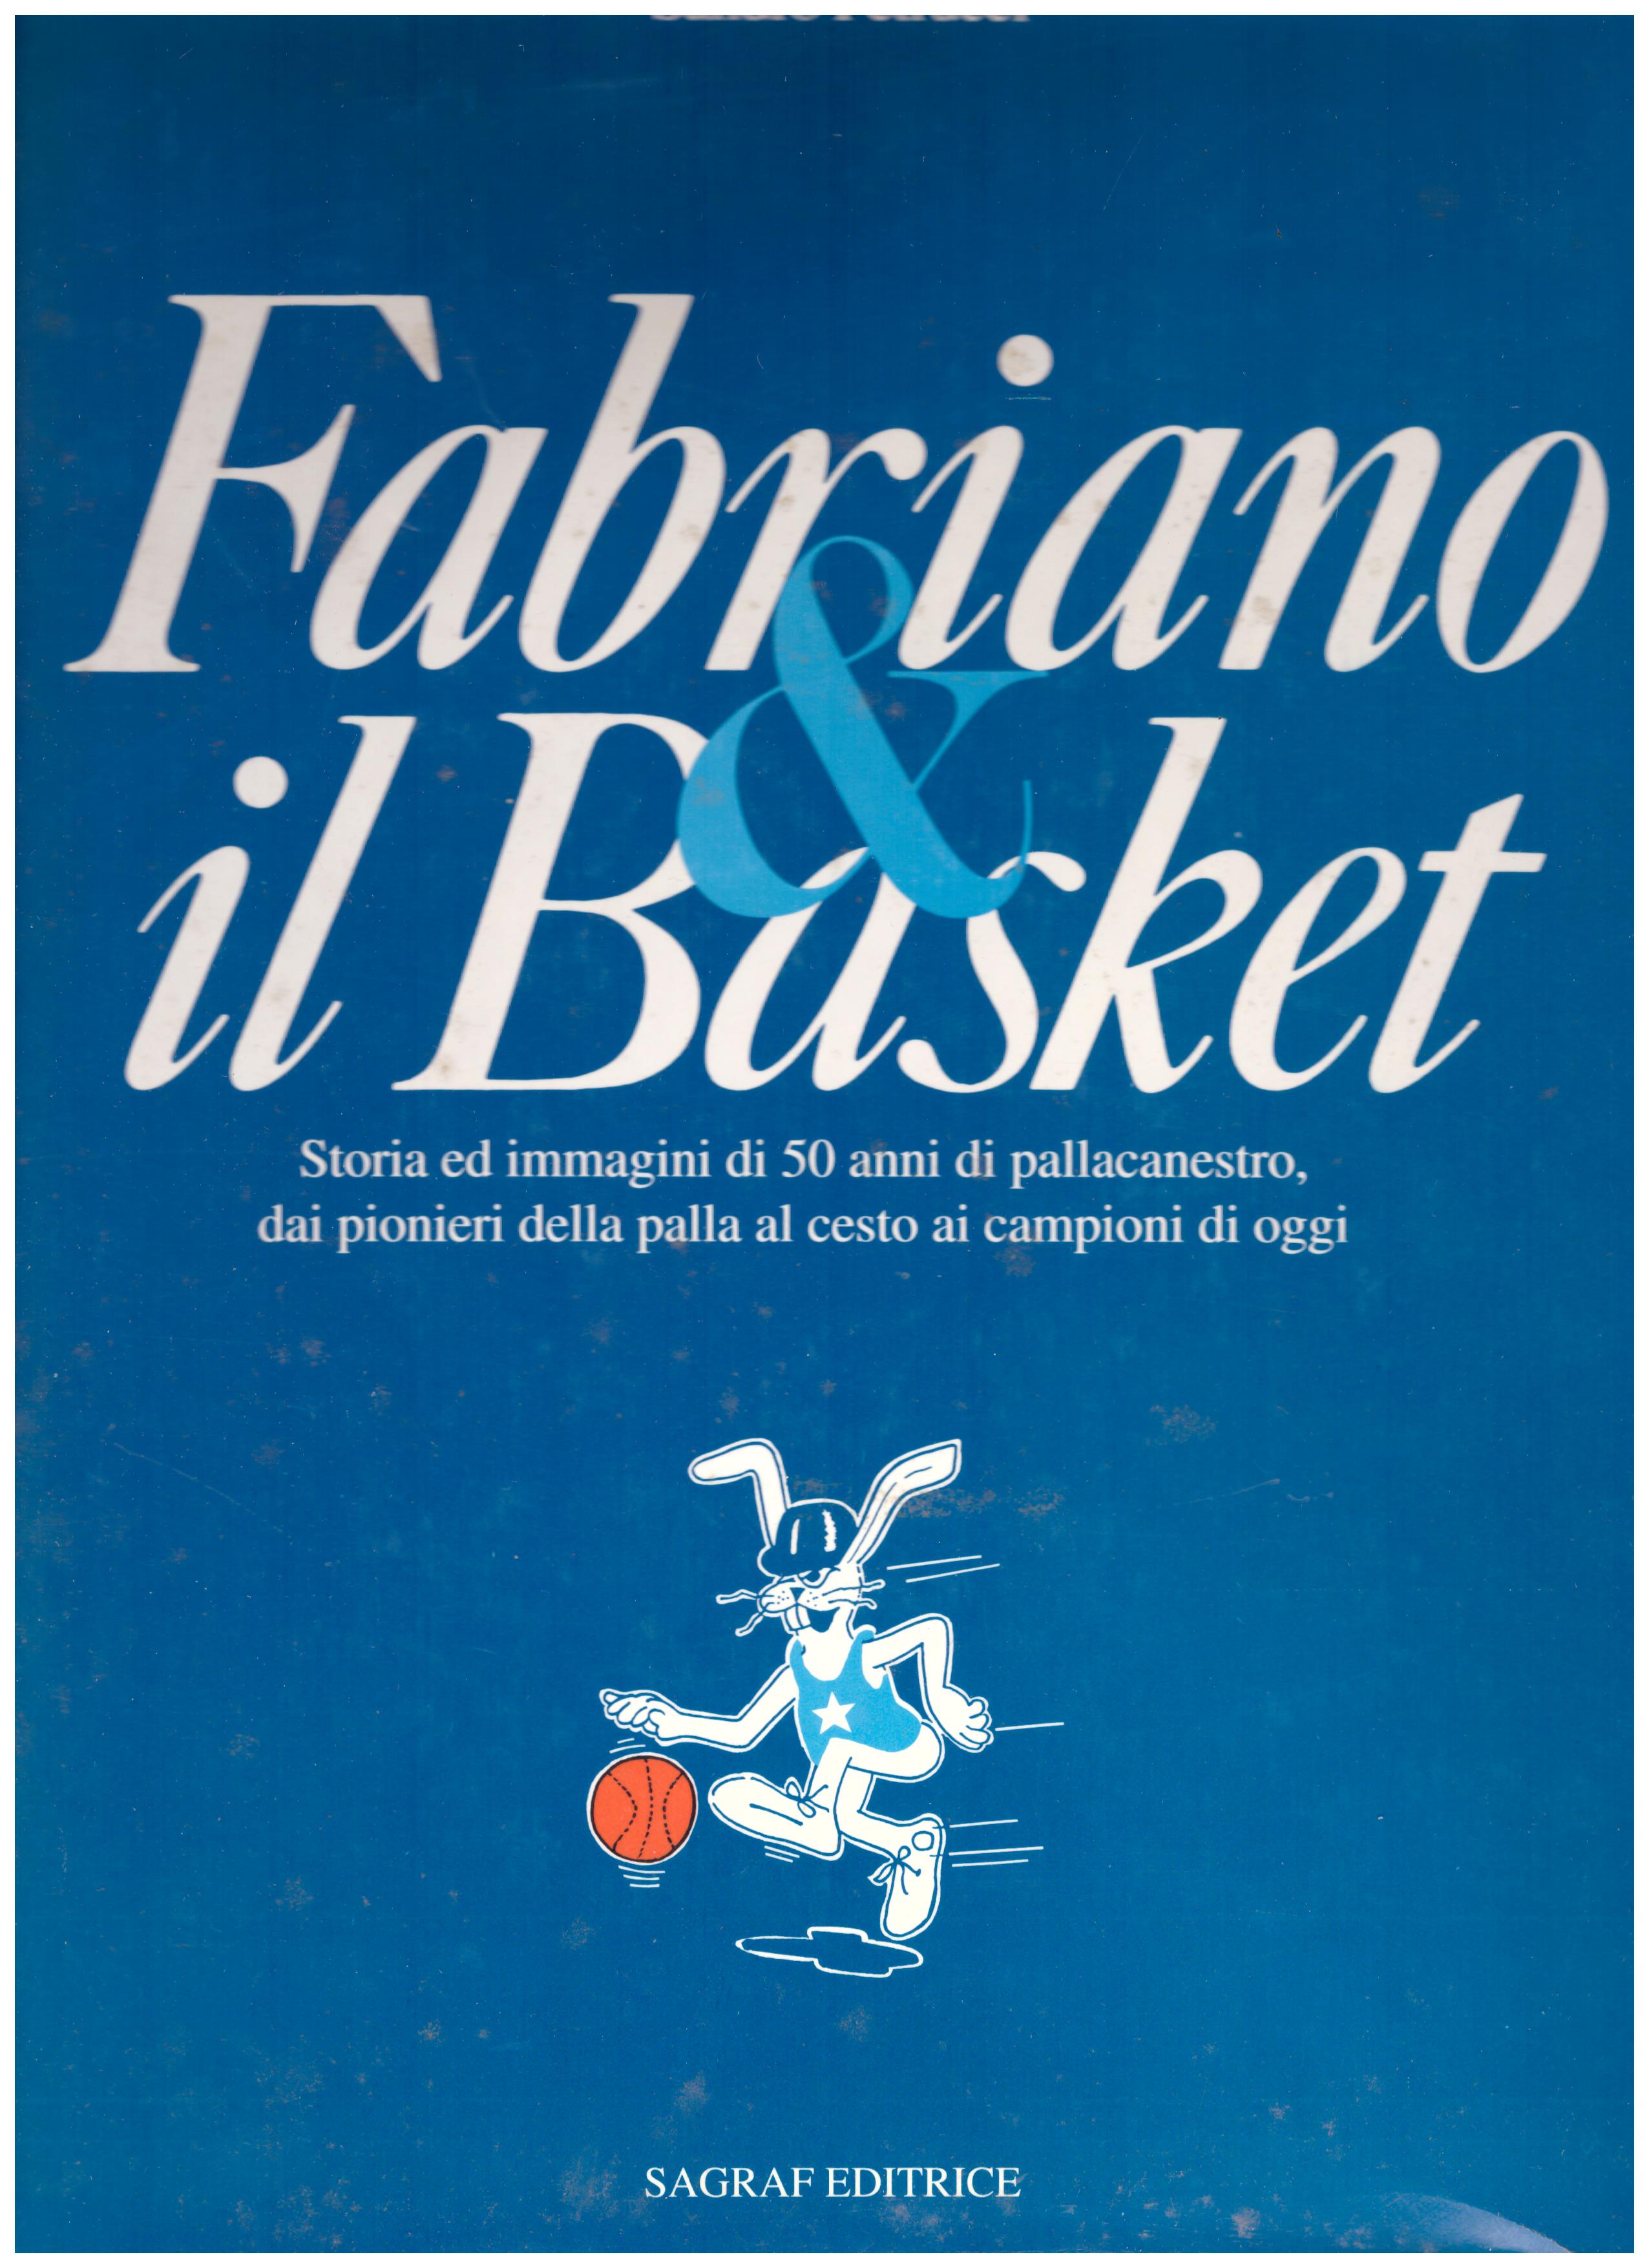 Titolo: Fabriano il basket   Autore: Sandro Petrucci  Editore: sagraf editrice